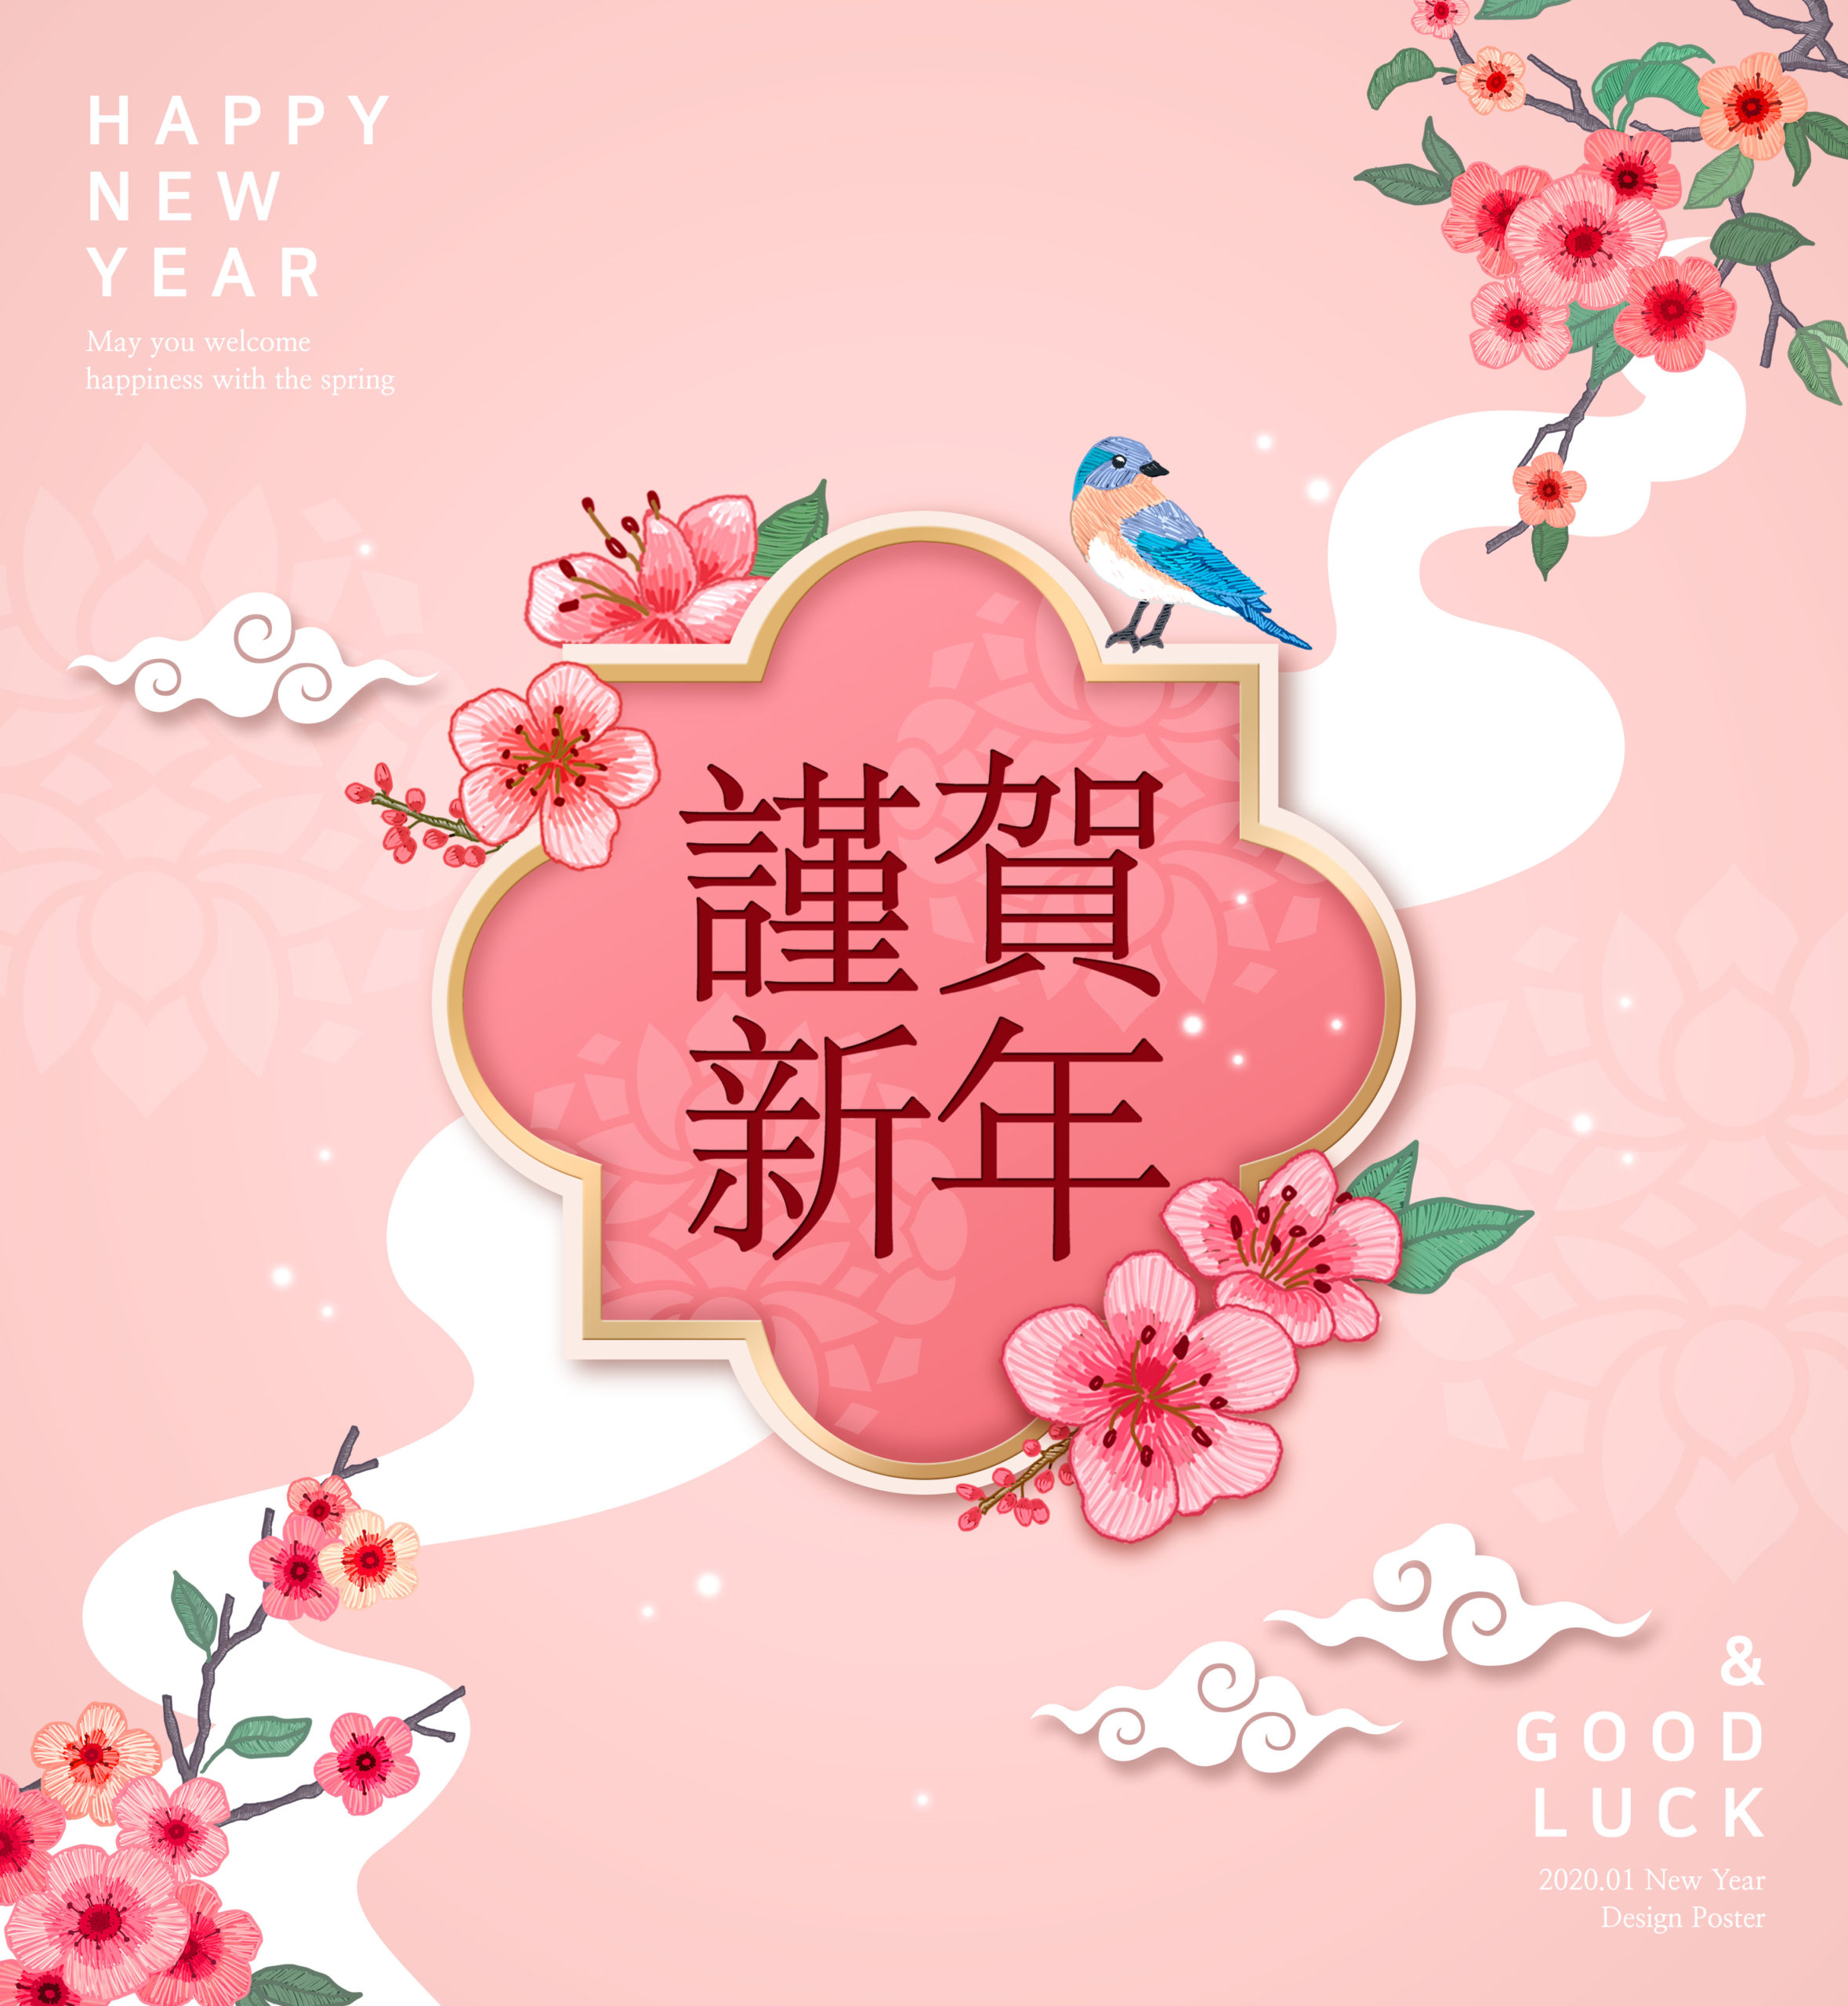 恭贺新春新年主题海报PSD素材第一素材精选模板插图